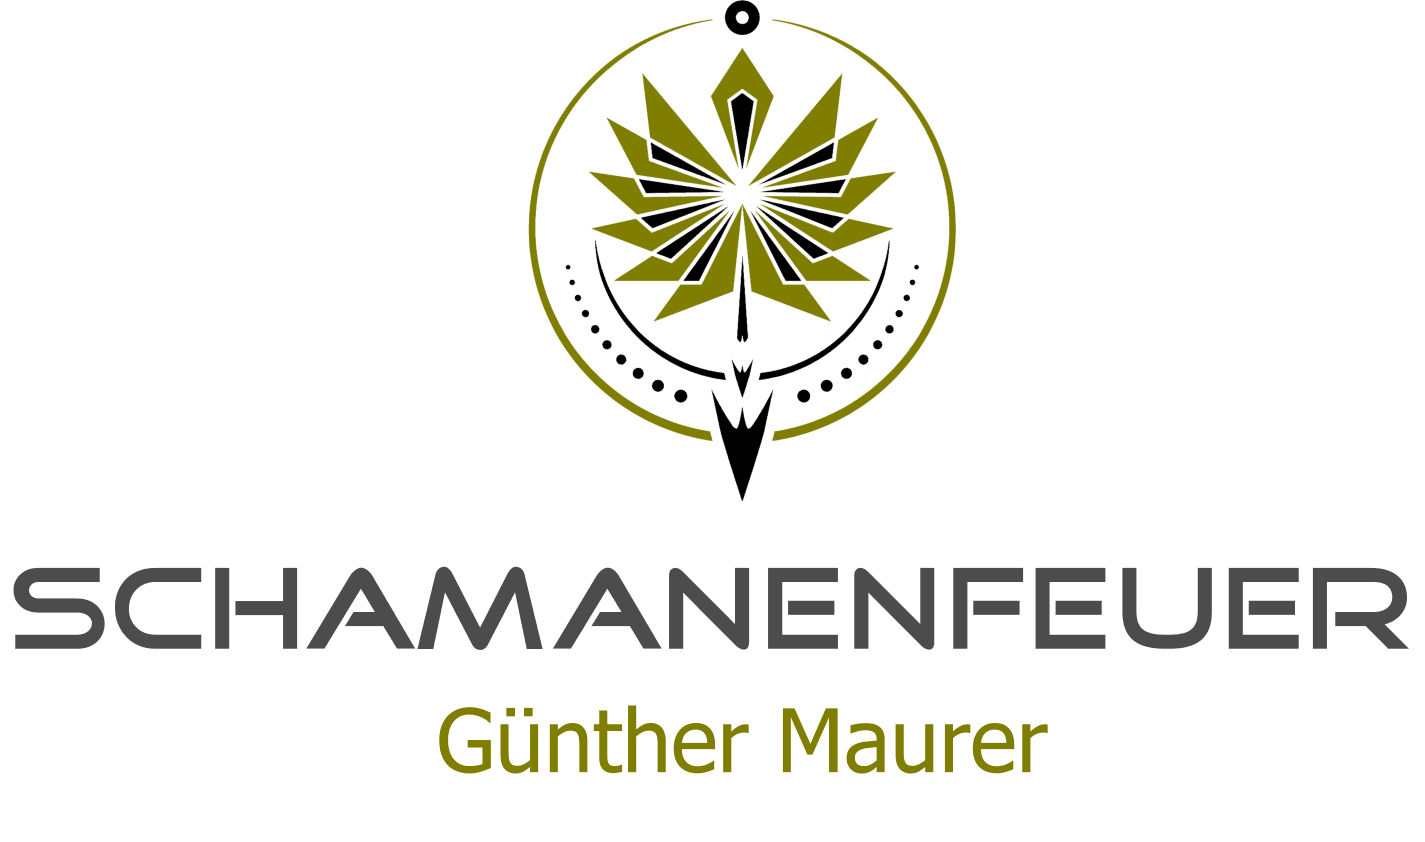 Günther Maurer | Schamanenfeuer